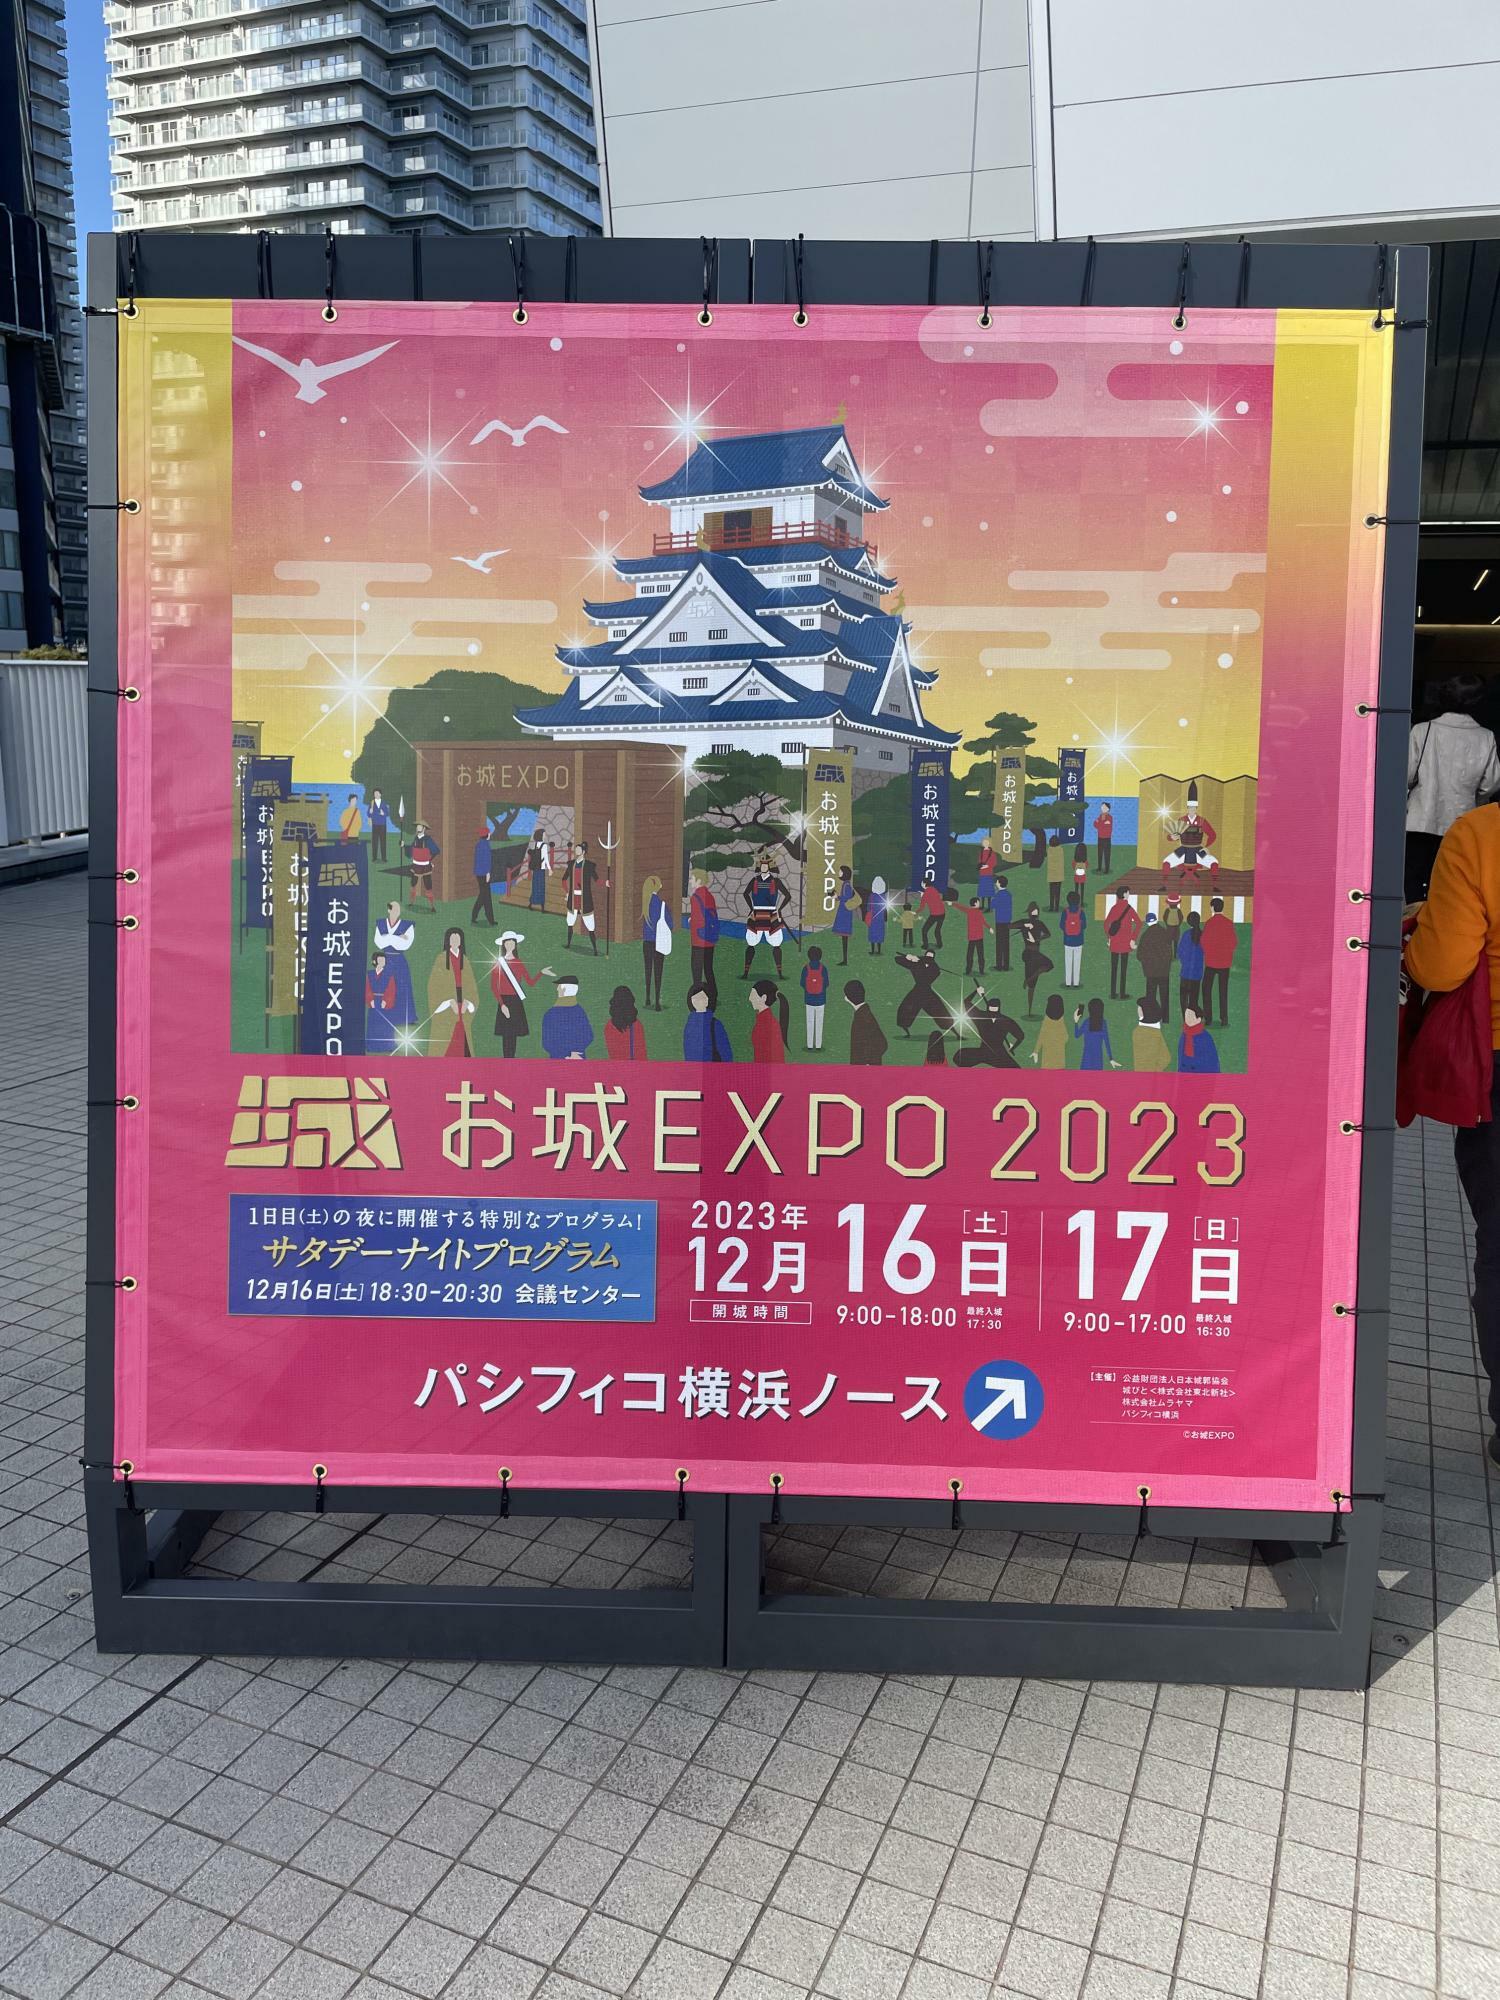 パシフィコ横浜のお城EXPOの会場案内版